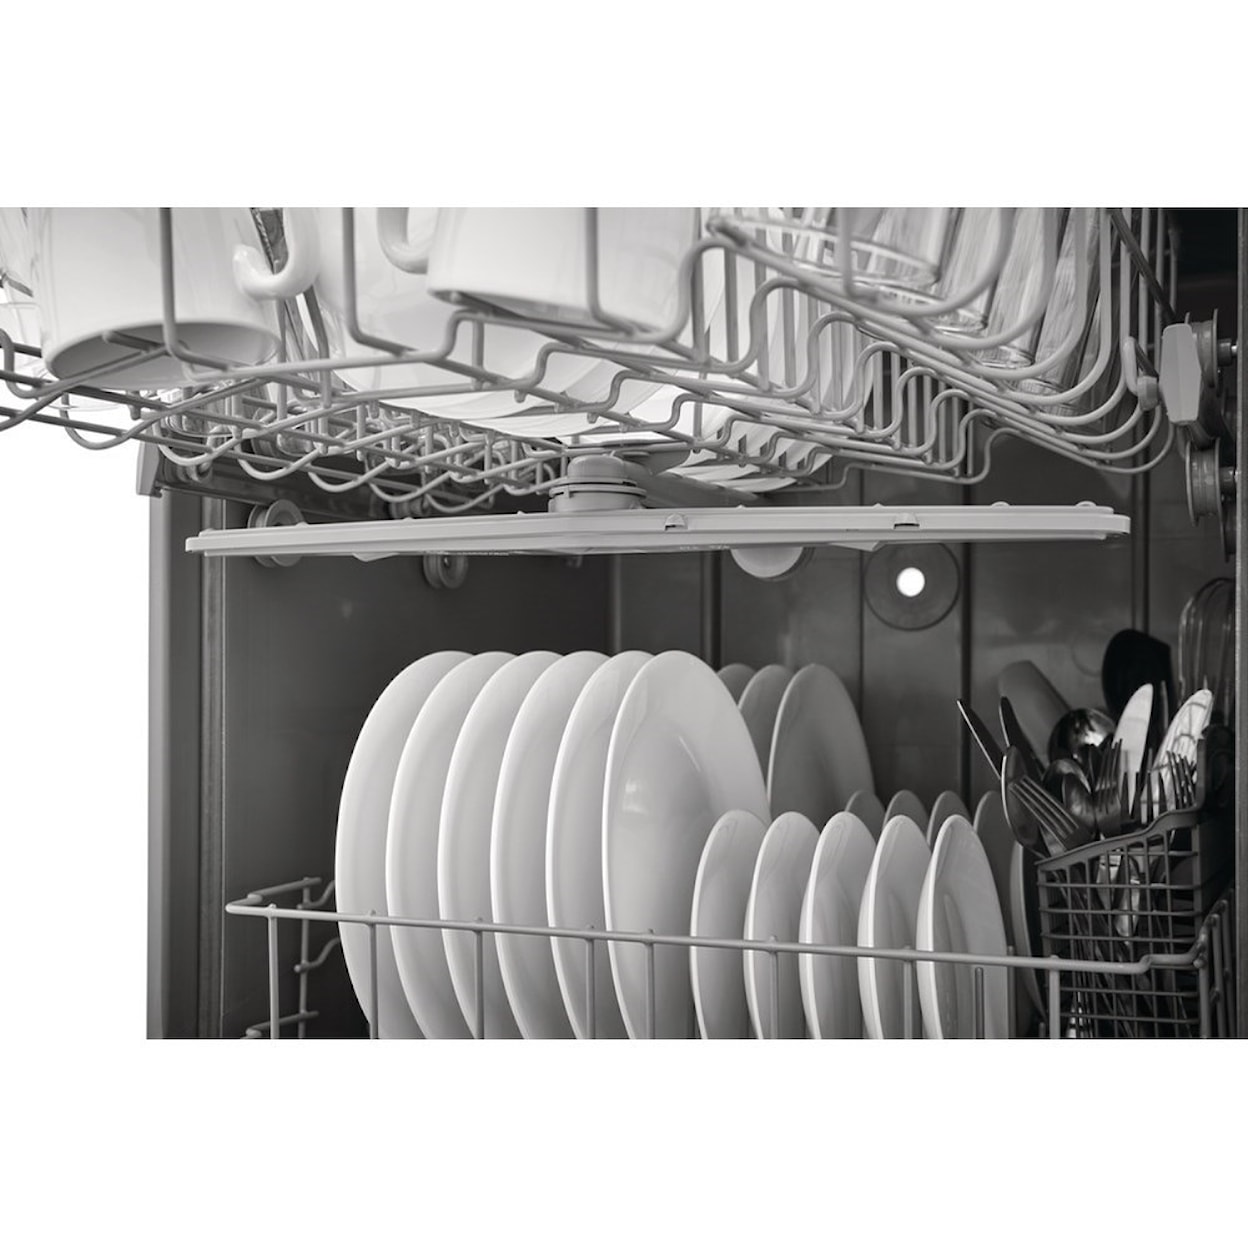 Frigidaire Dishwashers 24'' Built-In Dishwasher